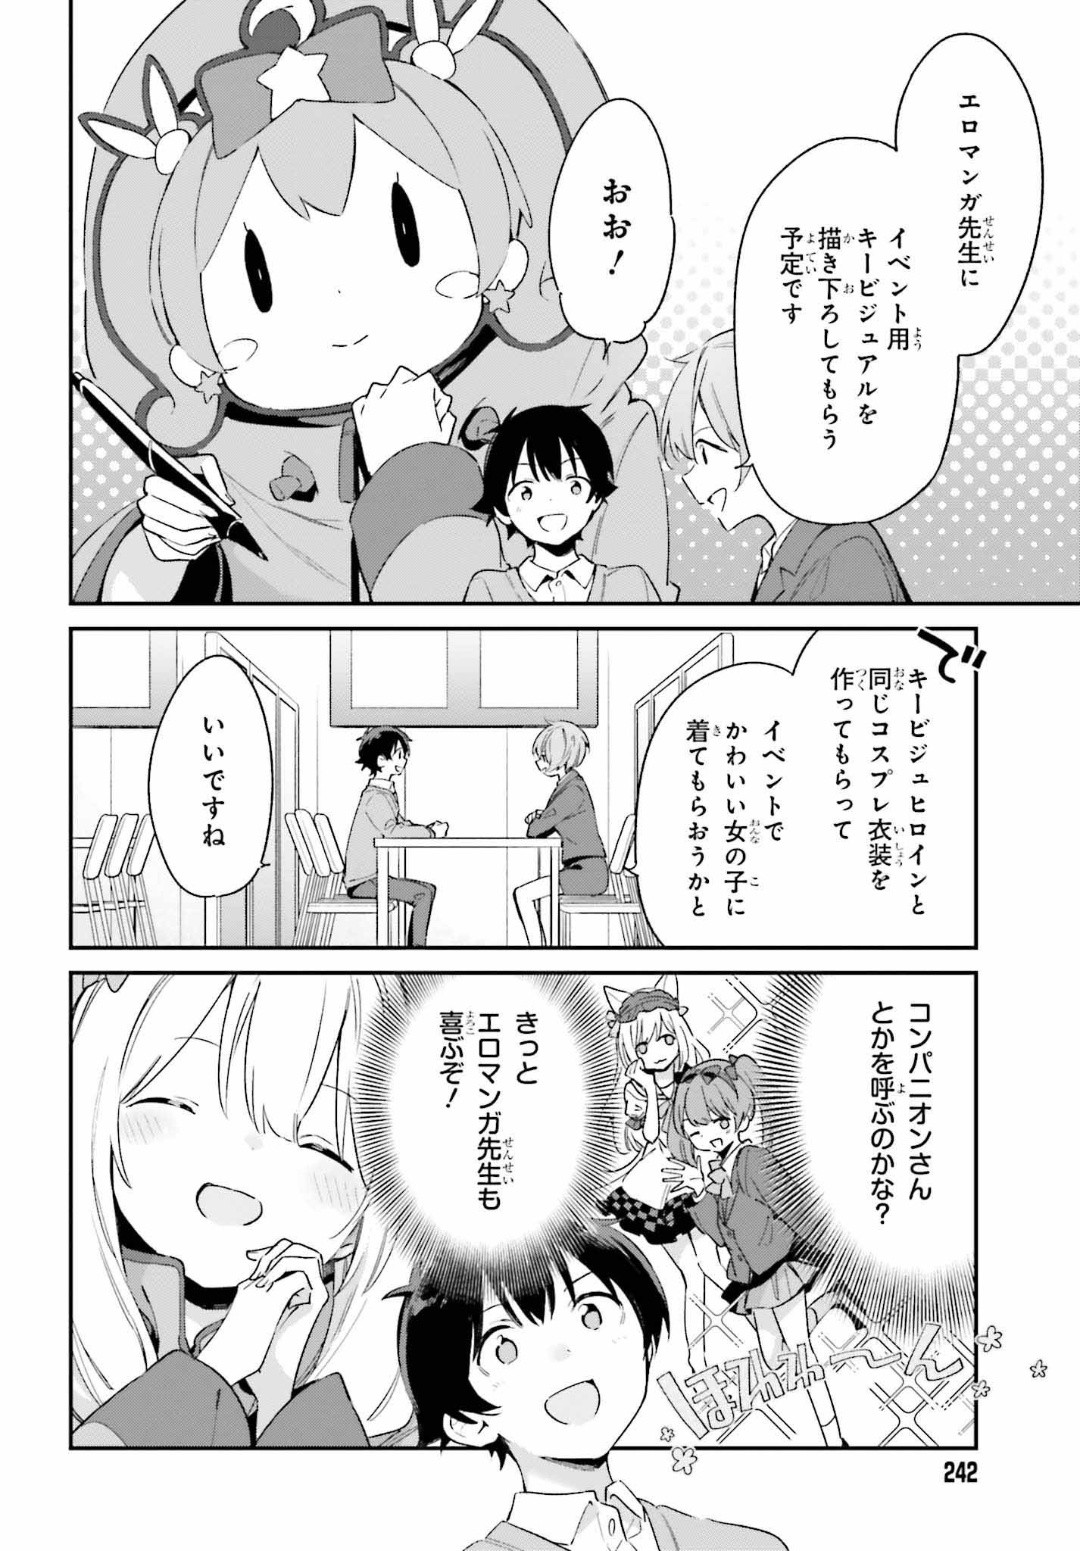 Ero Manga Sensei - Chapter 66 - Page 4